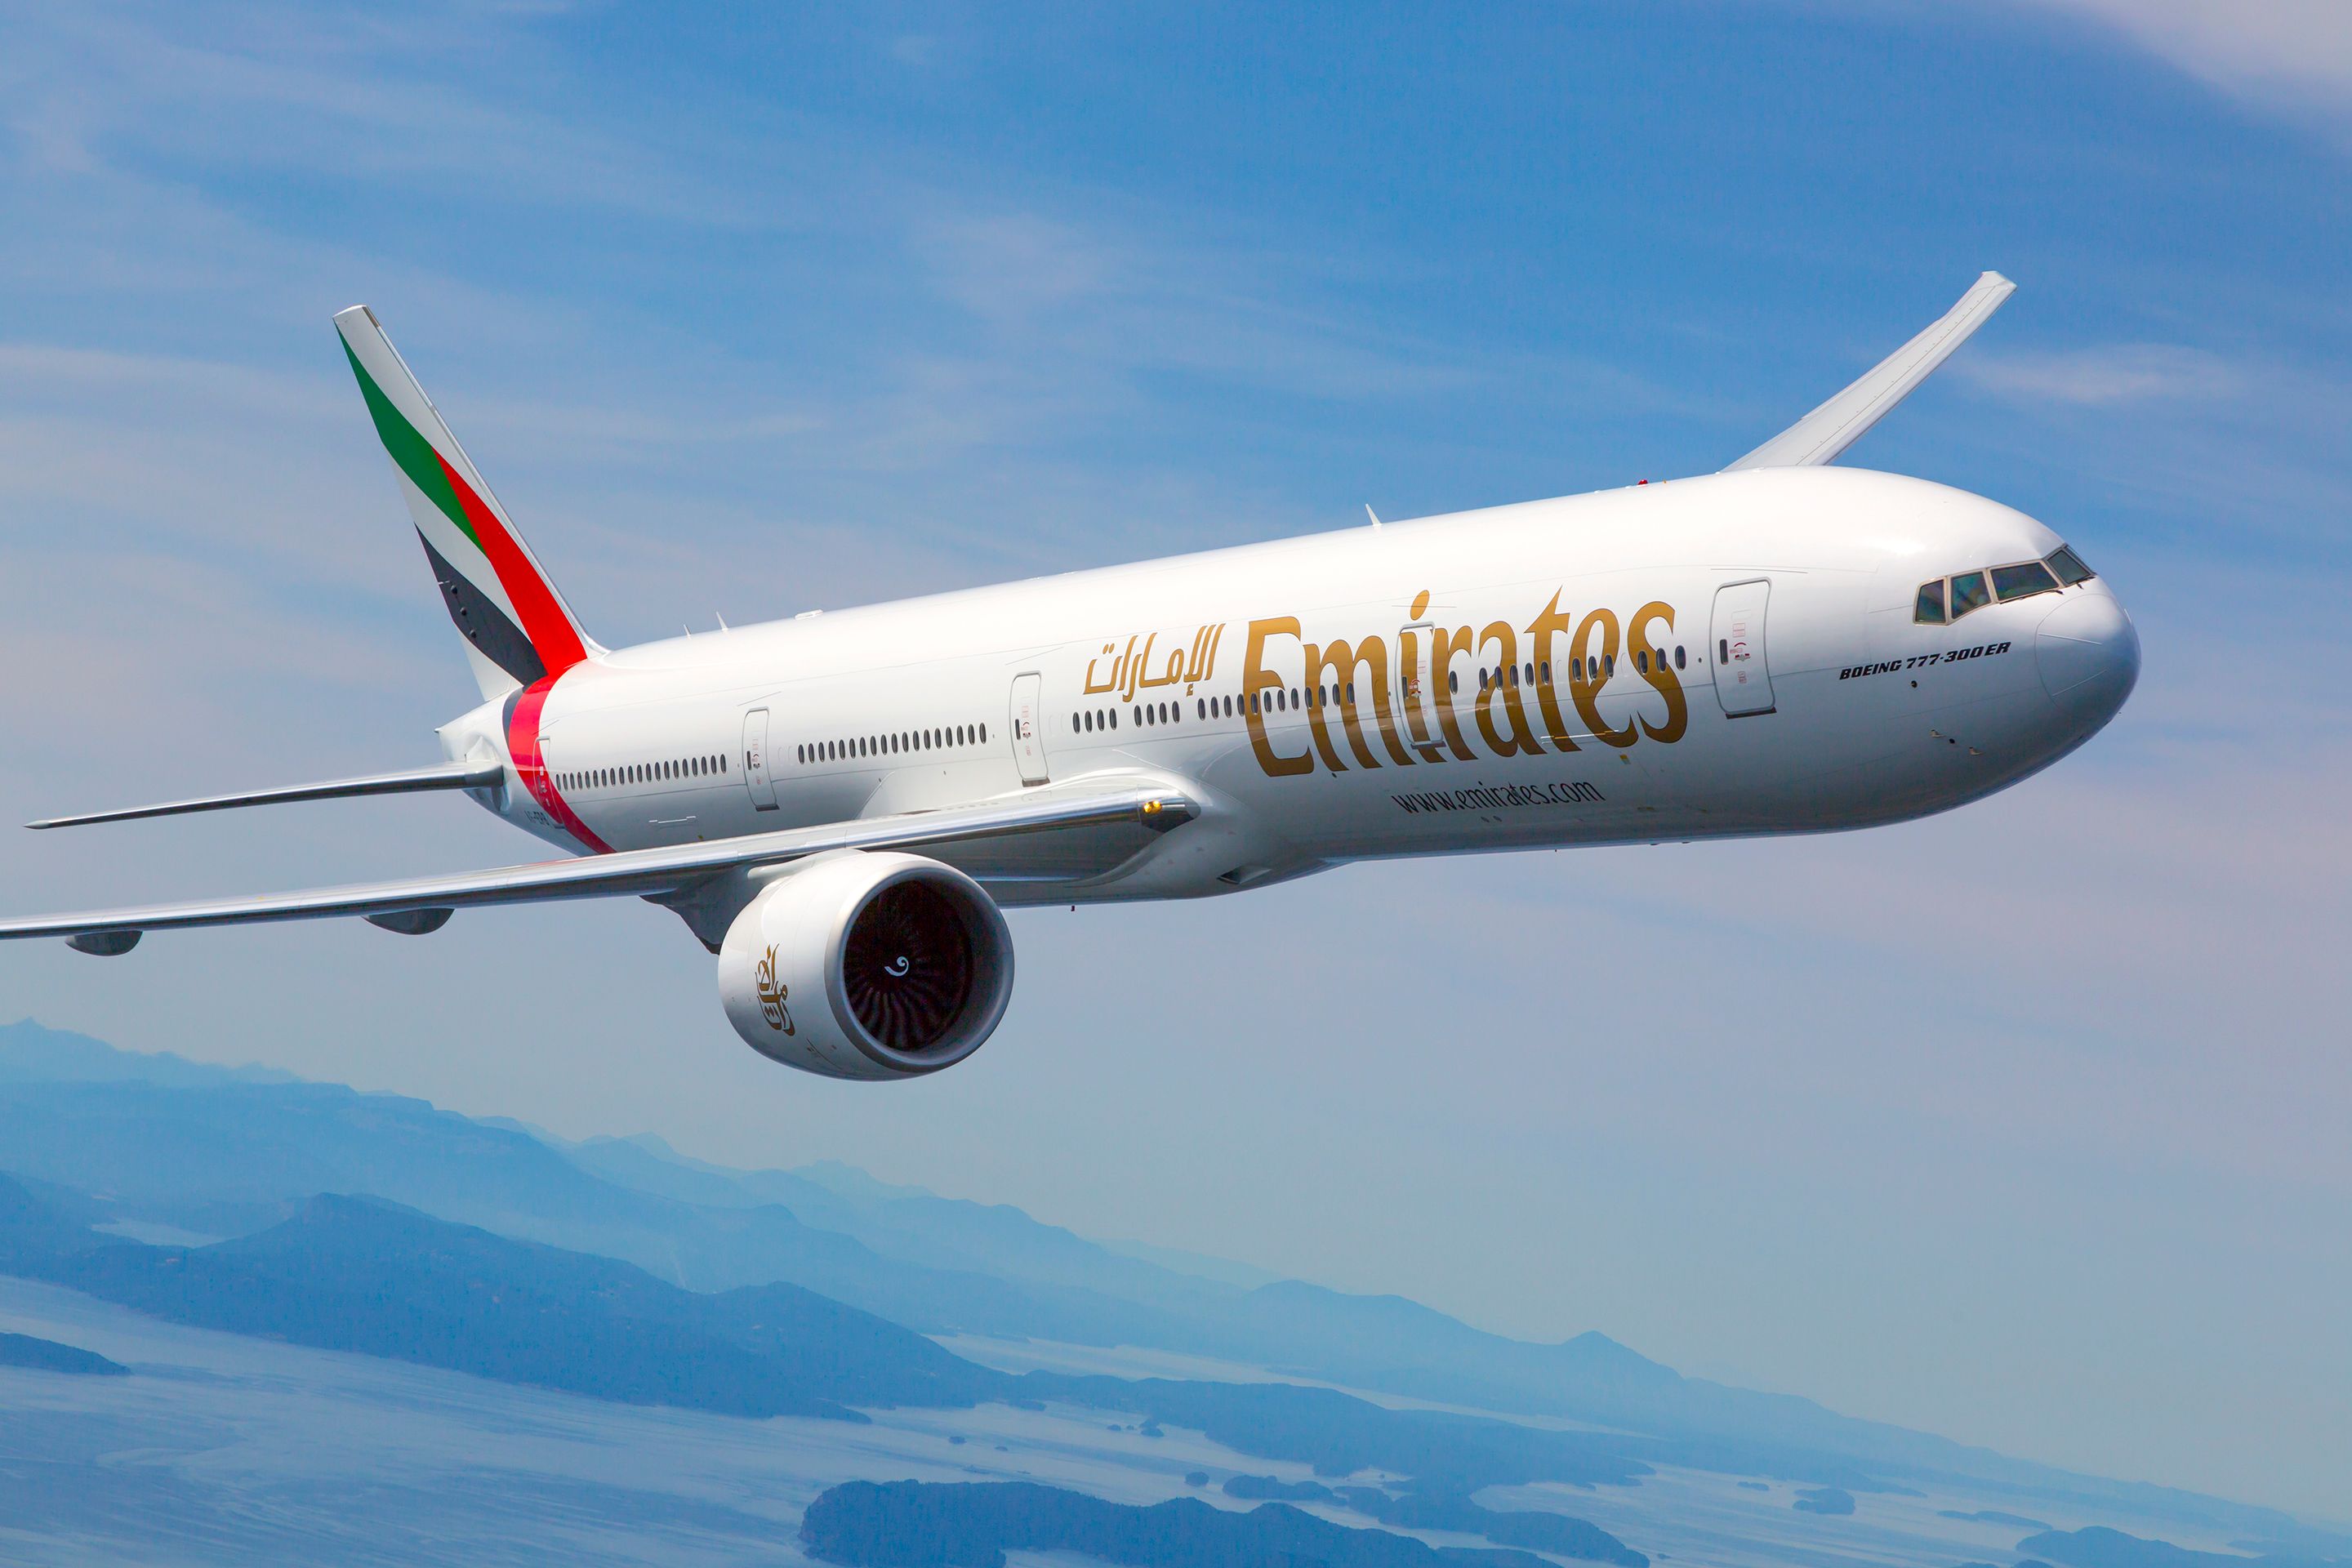 Emirates Boeing 777-300ER in flight